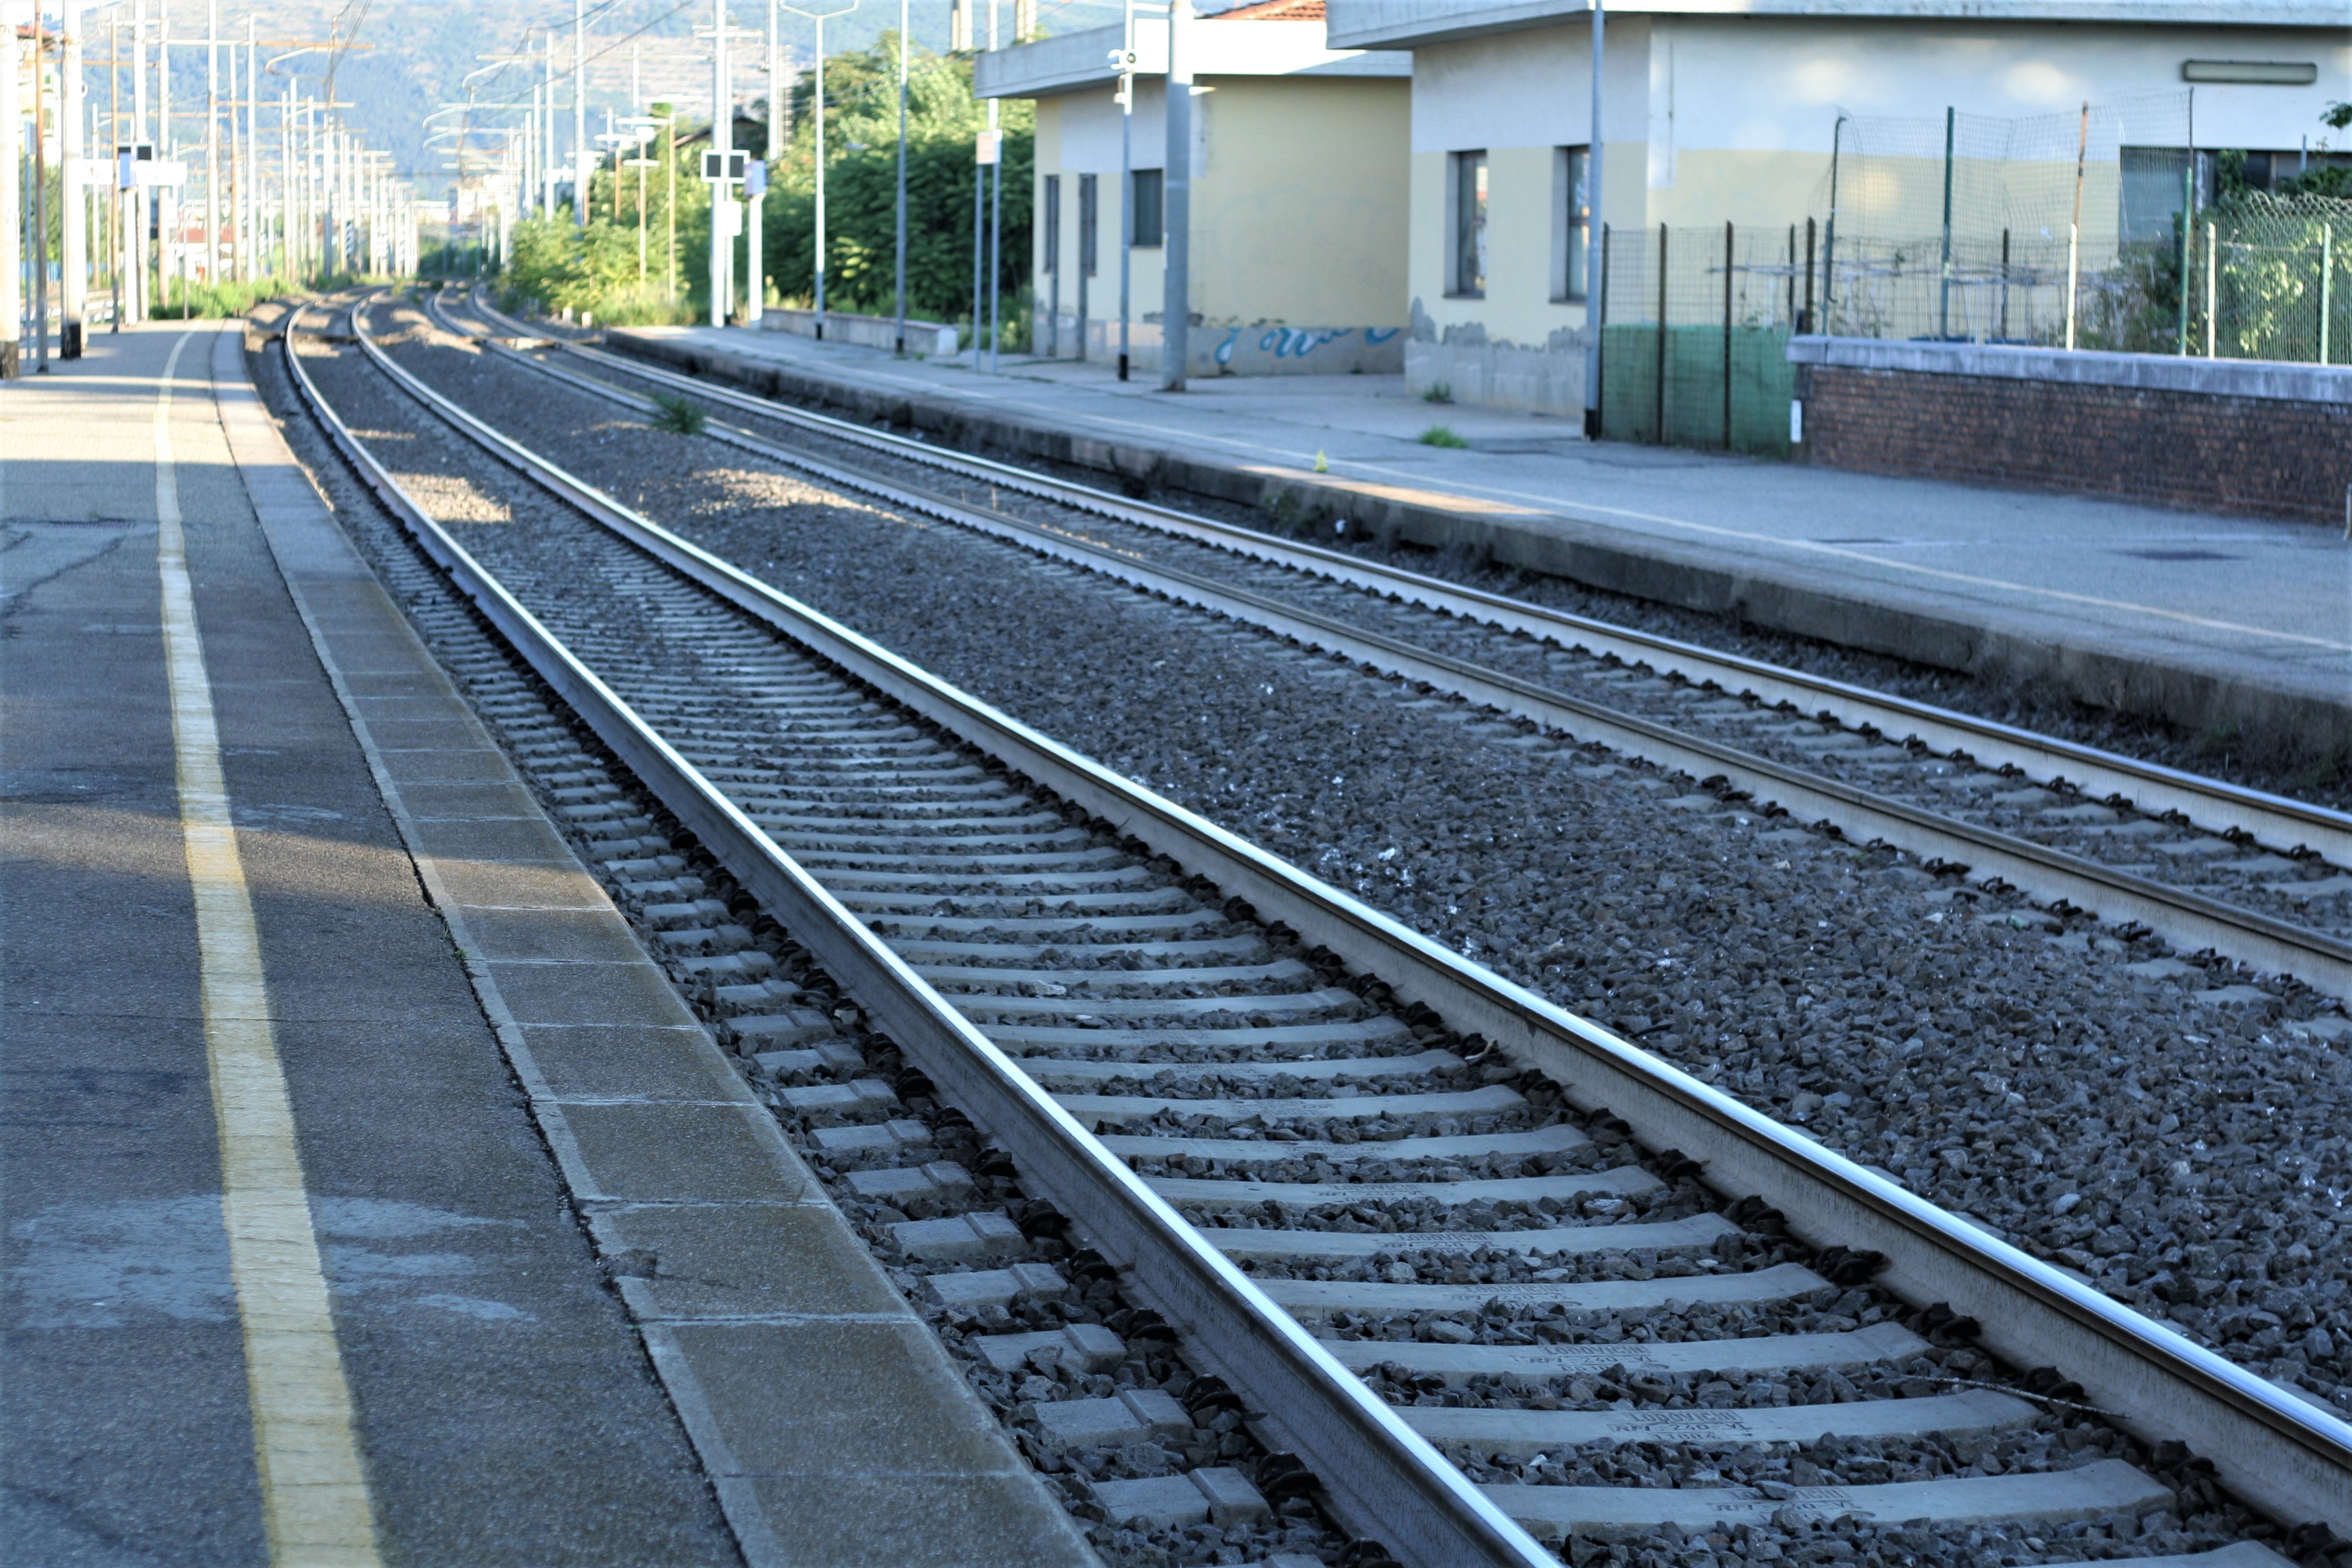 Rfi, linea Faentina: interventi di potenziamento infrastrutturale (foto archivio Antonello serino)